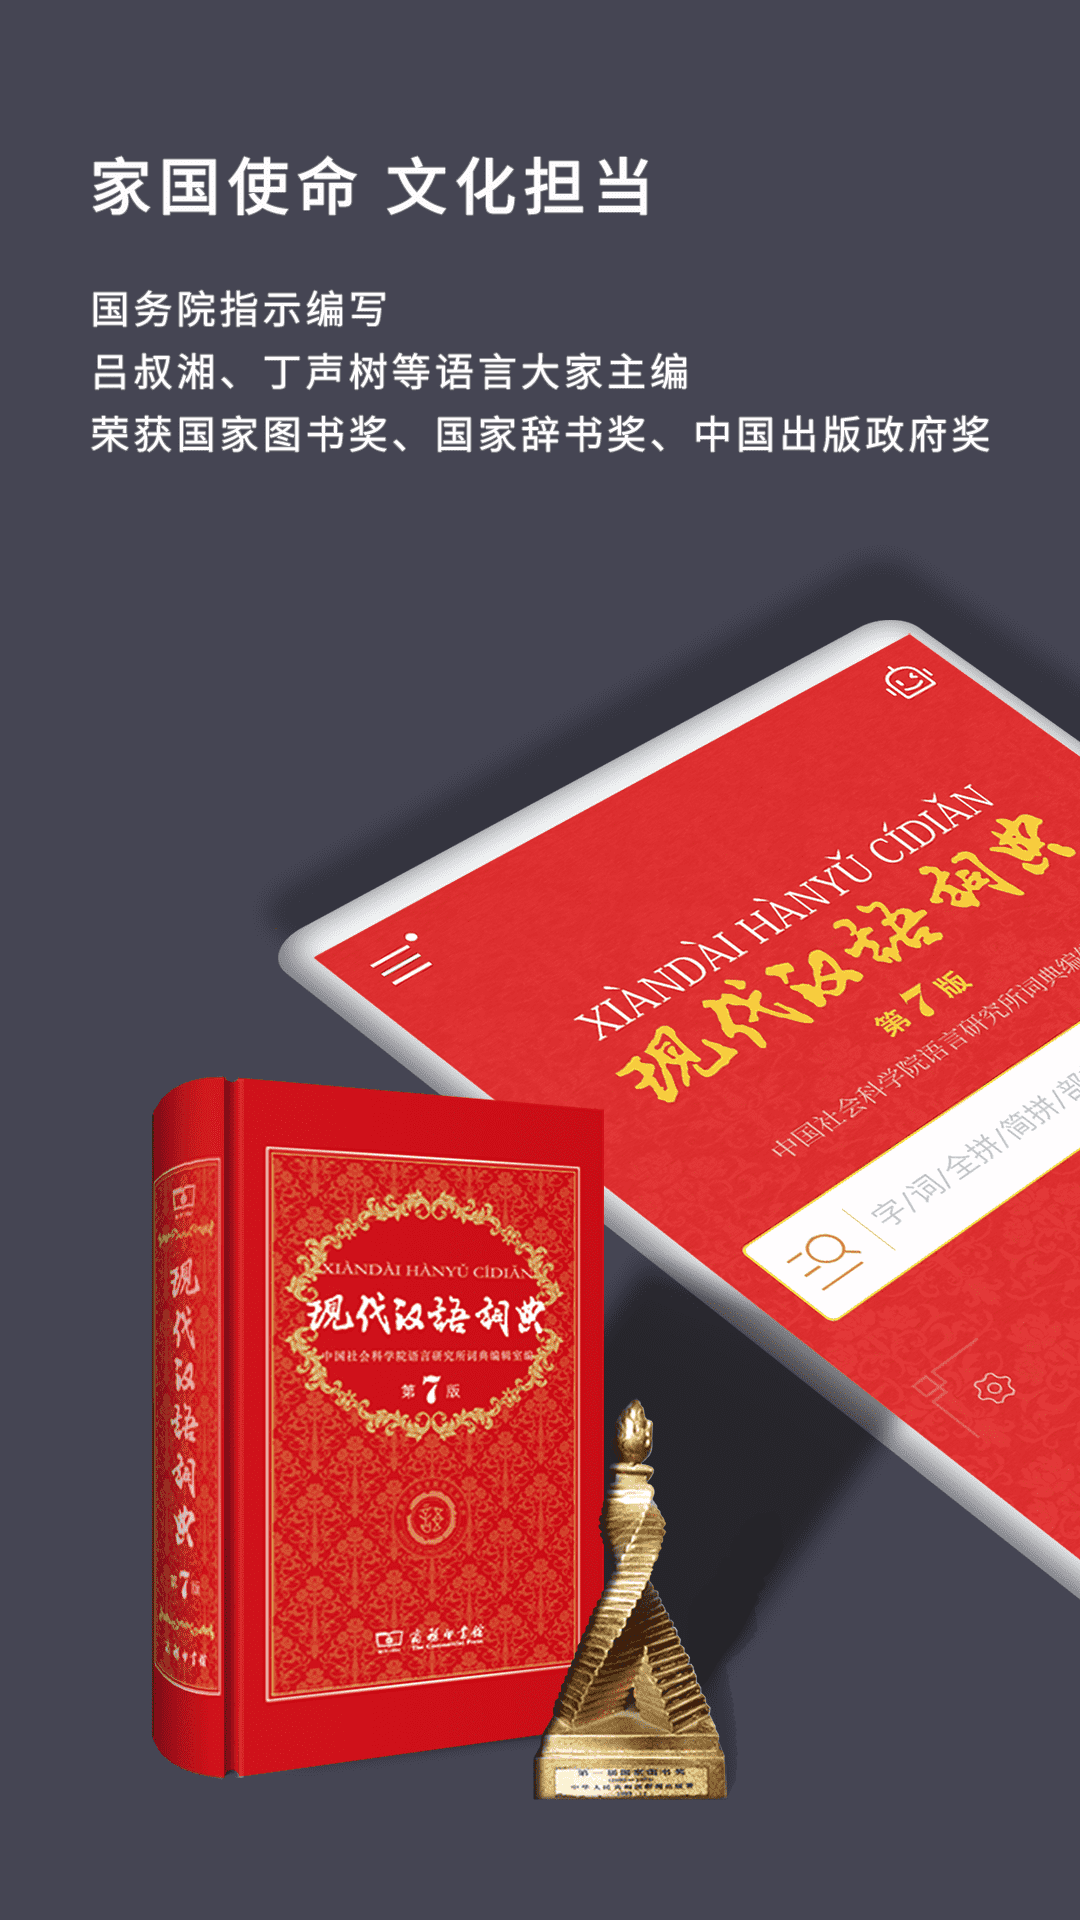 现代汉语词典最新版下载